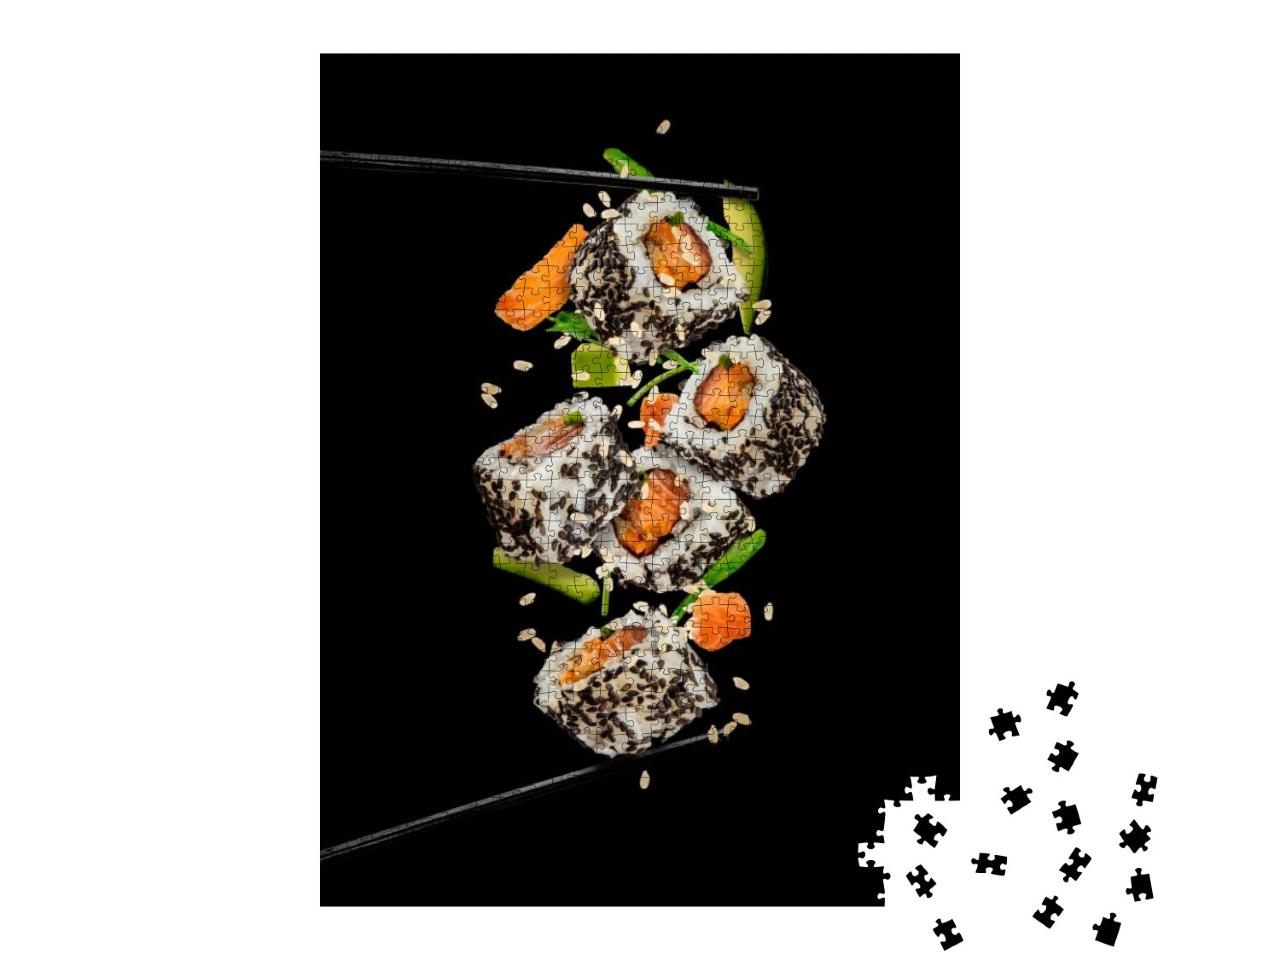 Puzzle 1000 Teile „Sushi-Stücke zwischen Stäbchen platziert vor schwarzem Hintergrund“